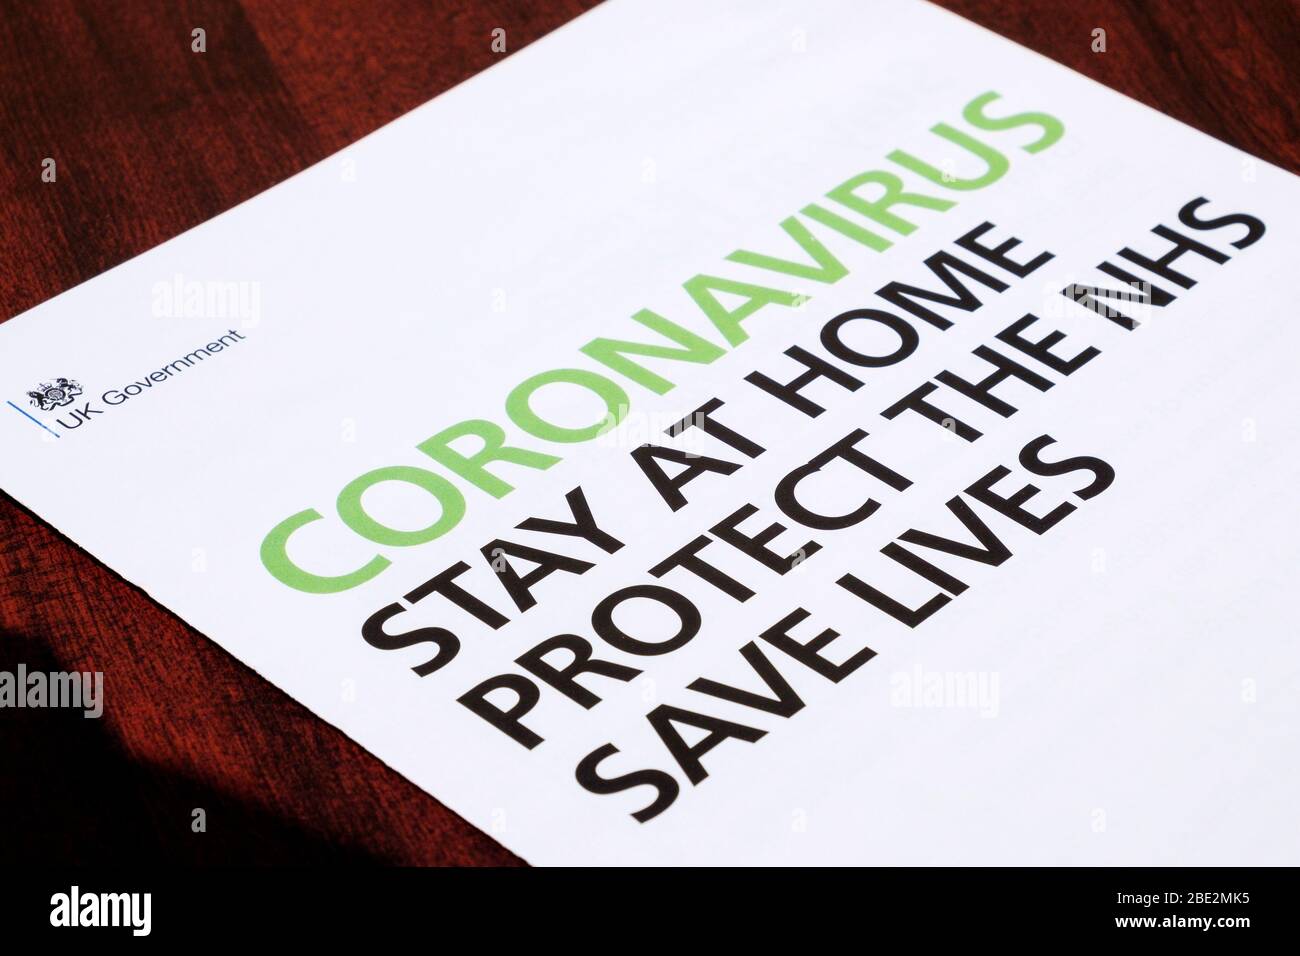 Un livret de protection des vies sauvées du NHS du gouvernement britannique qui a été envoyé avec la lettre de coronavirus du premier ministre Boris Johnson est illustré Banque D'Images